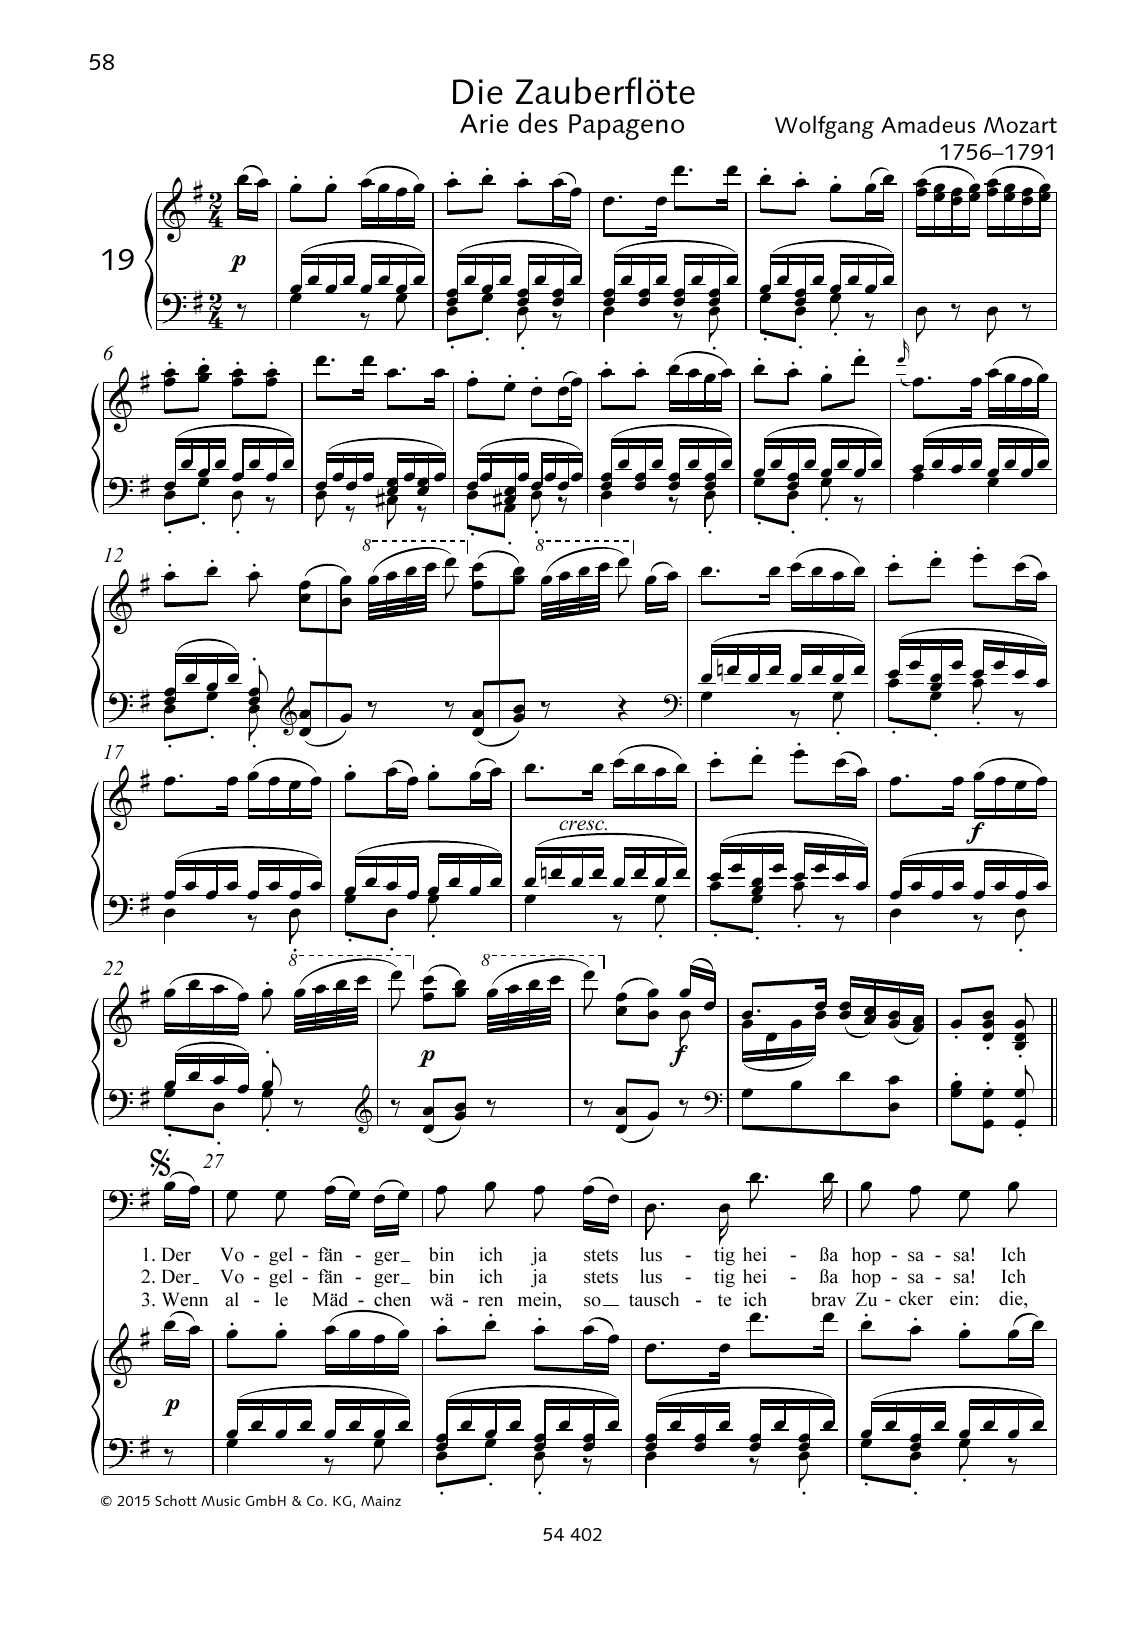 Download Wolfgang Amadeus Mozart Der Vogelfanger Bin Ich Ja Sheet Music